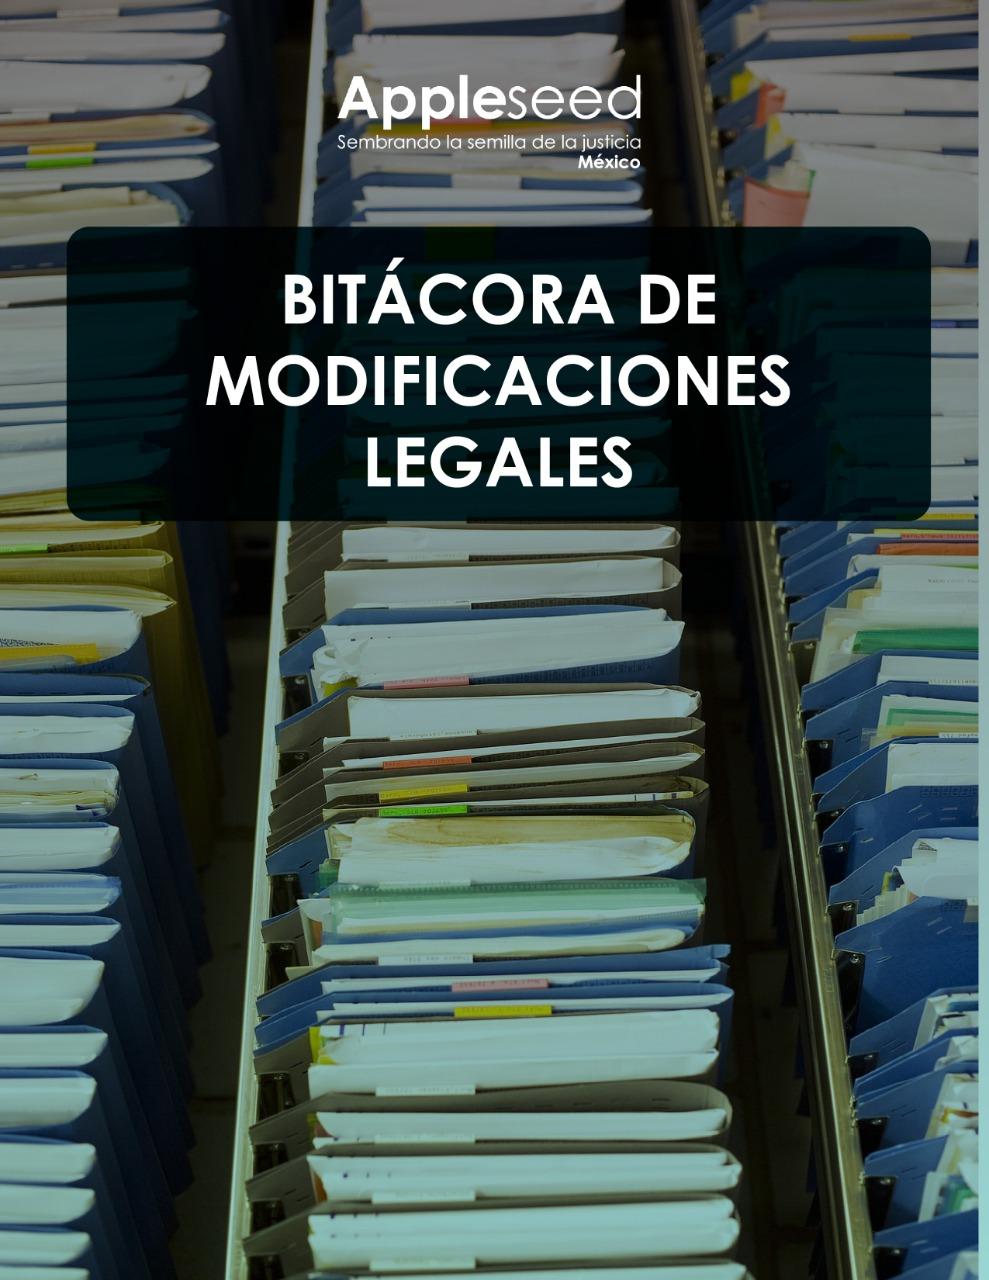 Bitácora de disposiciones legales desarrolladas por la Administración actual 2019 -2021